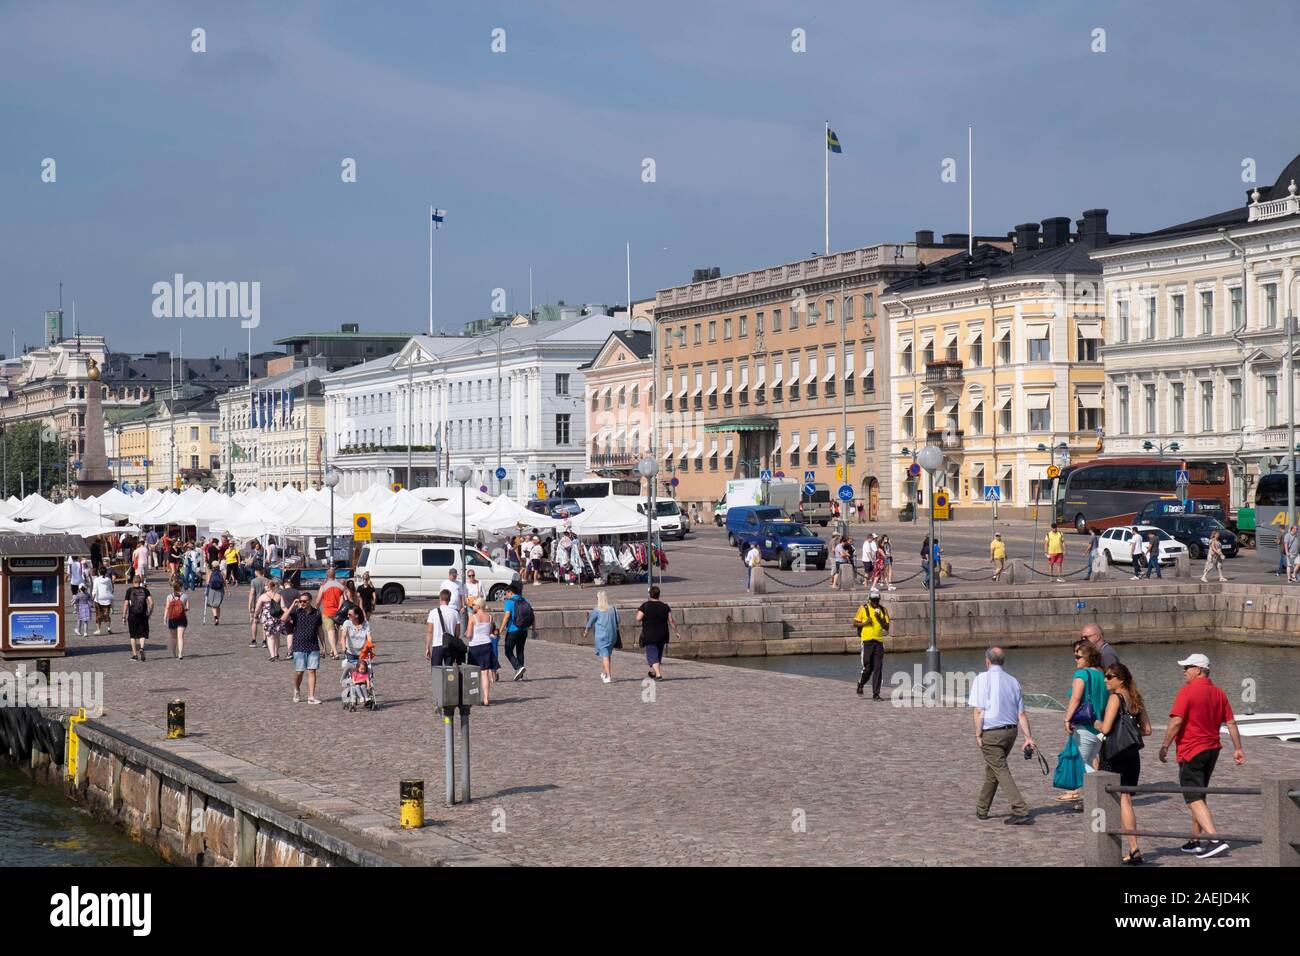 Ansicht von Süden Hafen in Richtung Markt, Kauppatori Marktplatz und Regierungsgebäude (rechts), Helsinki, Finnland, Skandinavien, Europa. Stockfoto